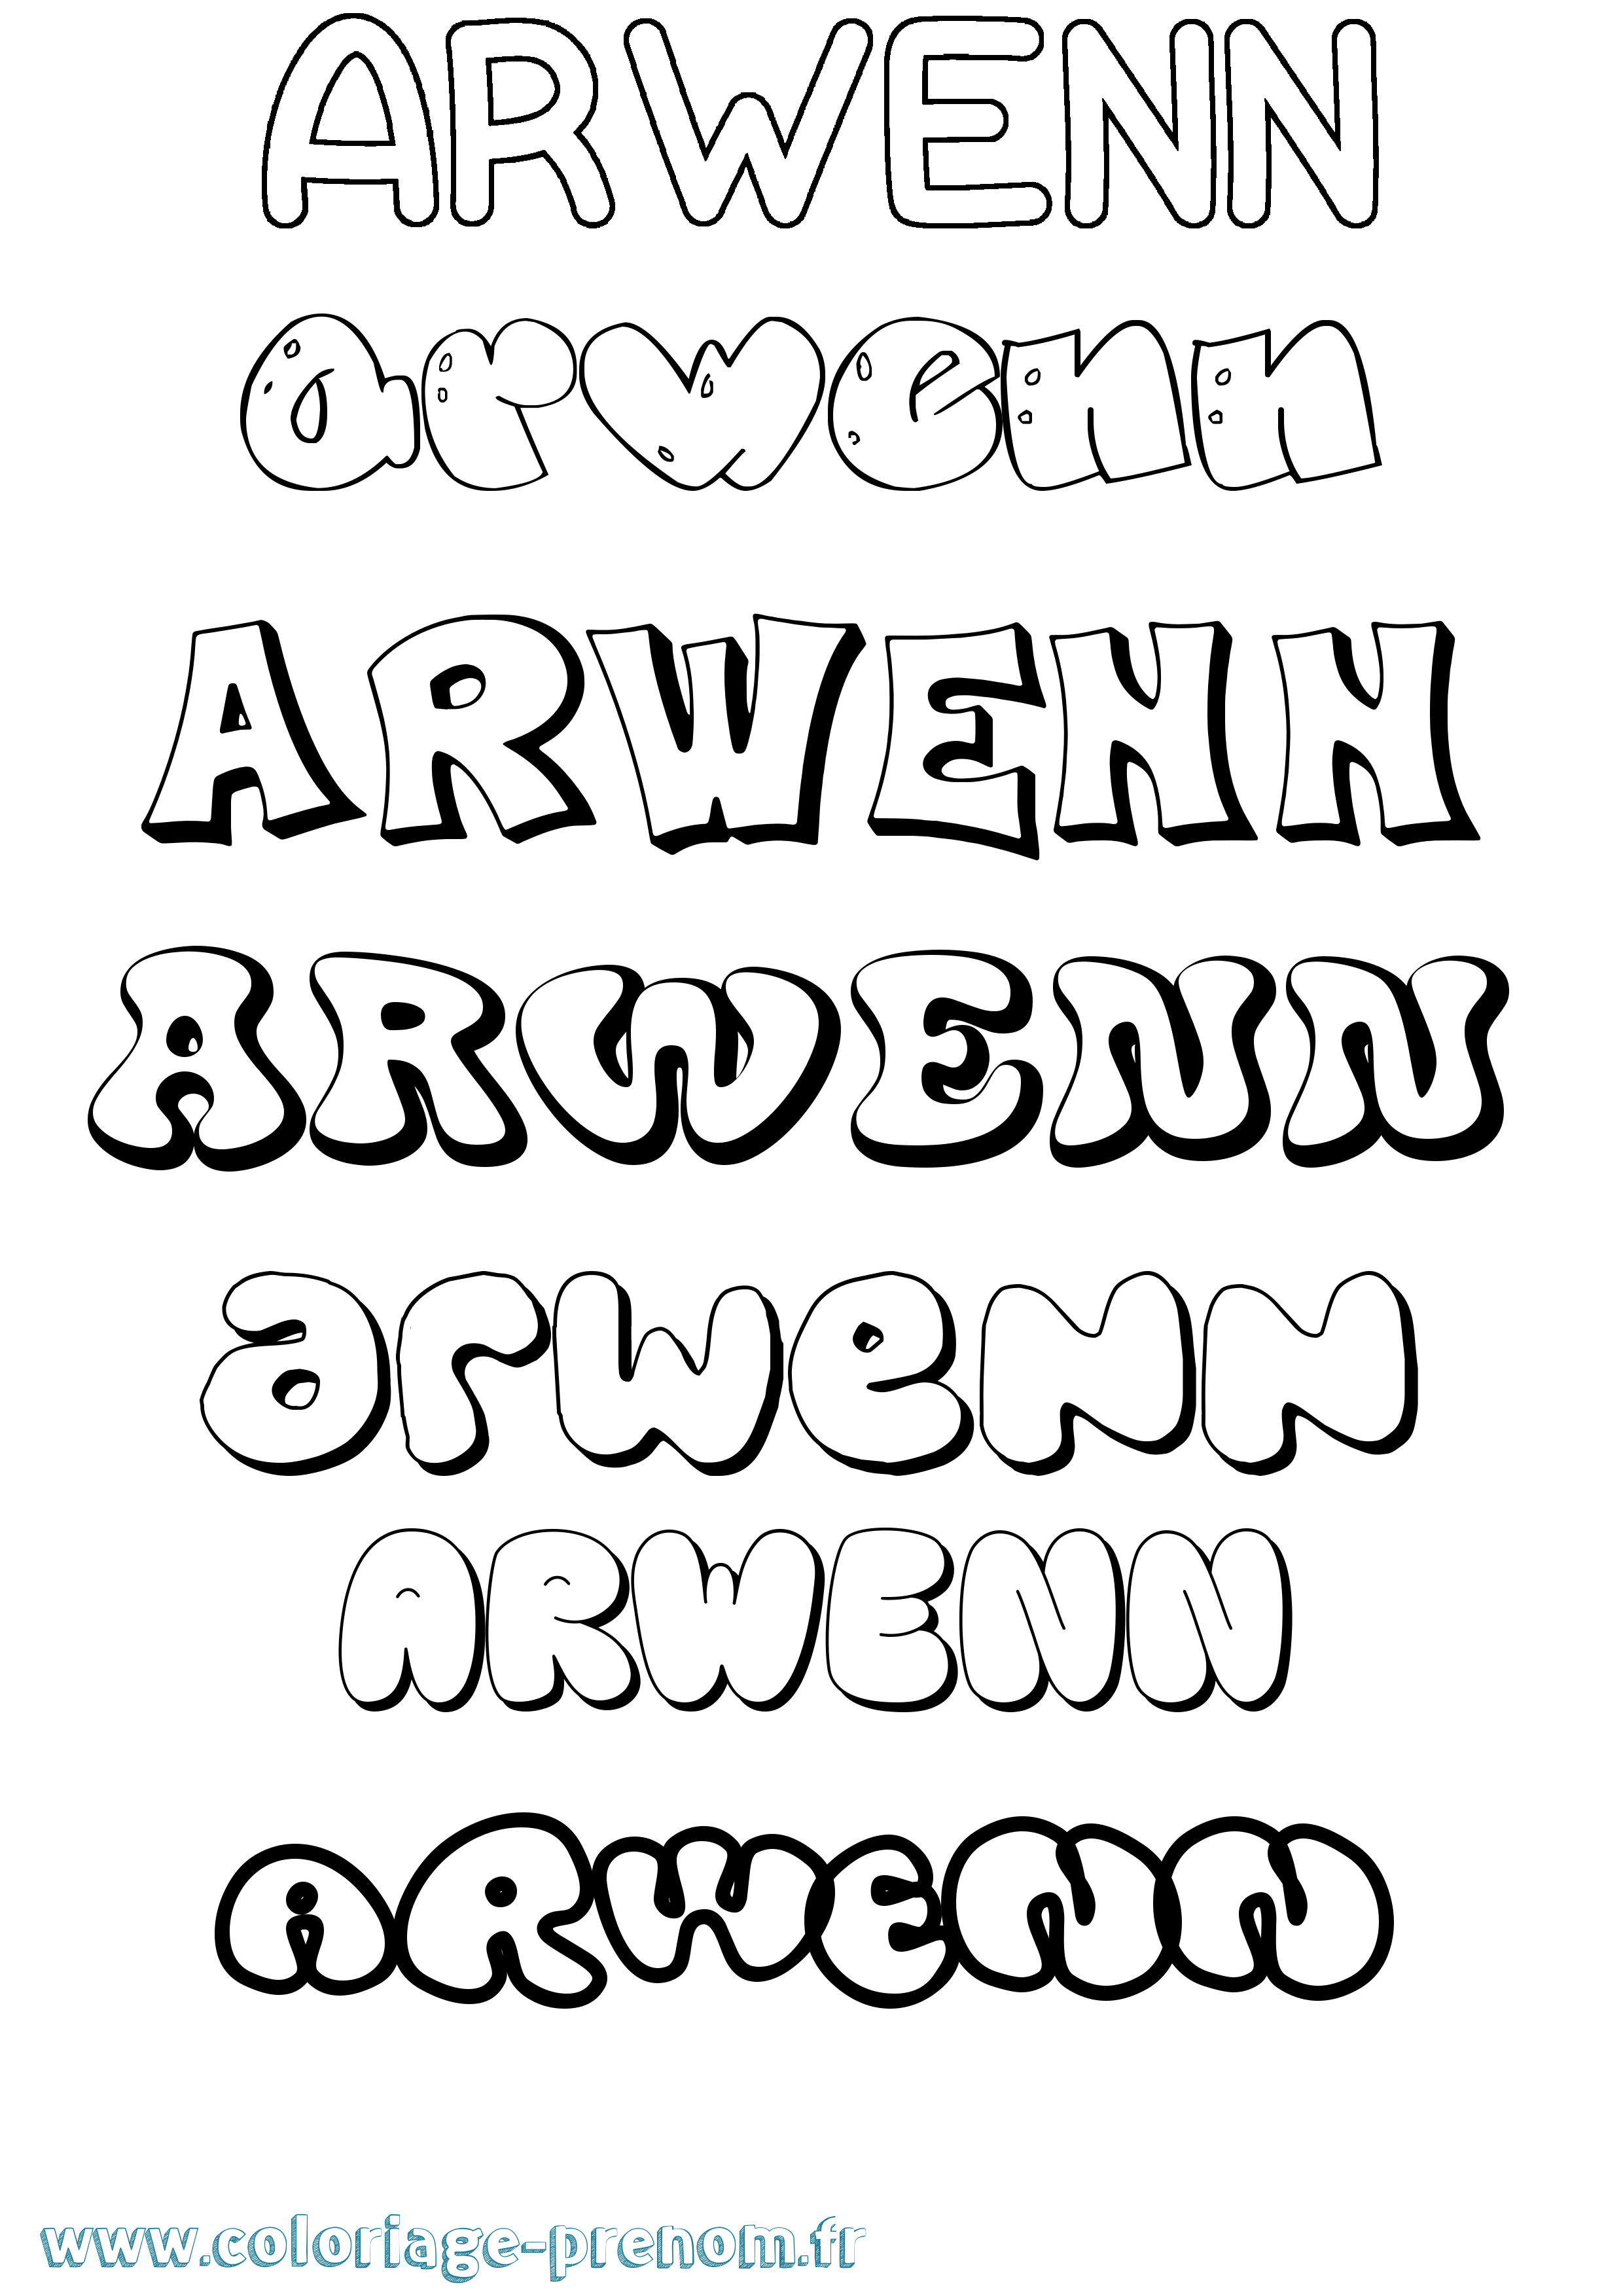 Coloriage prénom Arwenn Bubble